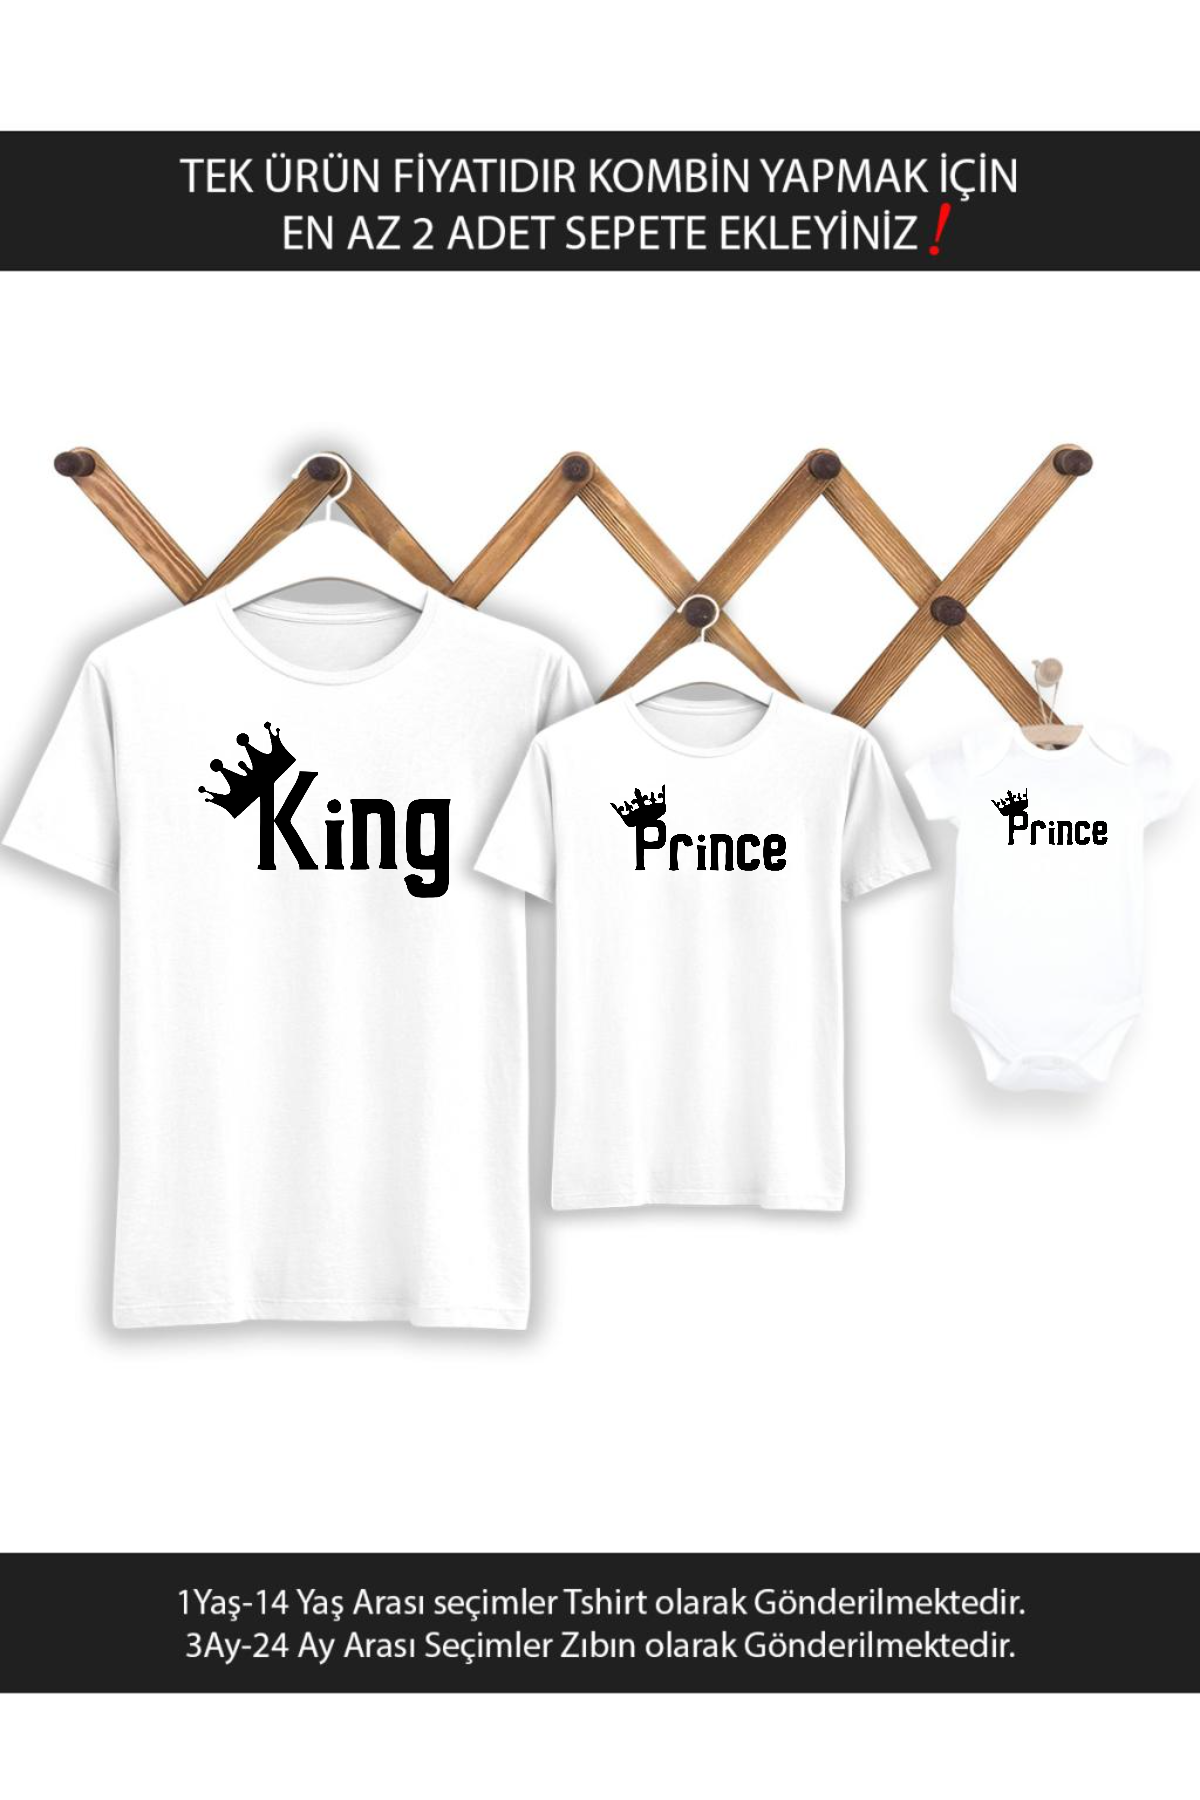 Baba Oğul King Prince (TEK ÜRÜN FİYATIDIR KOMBİN YAPMAK İÇİN EN AZ 2 ADET SEPETE EKLEYİNİZ)